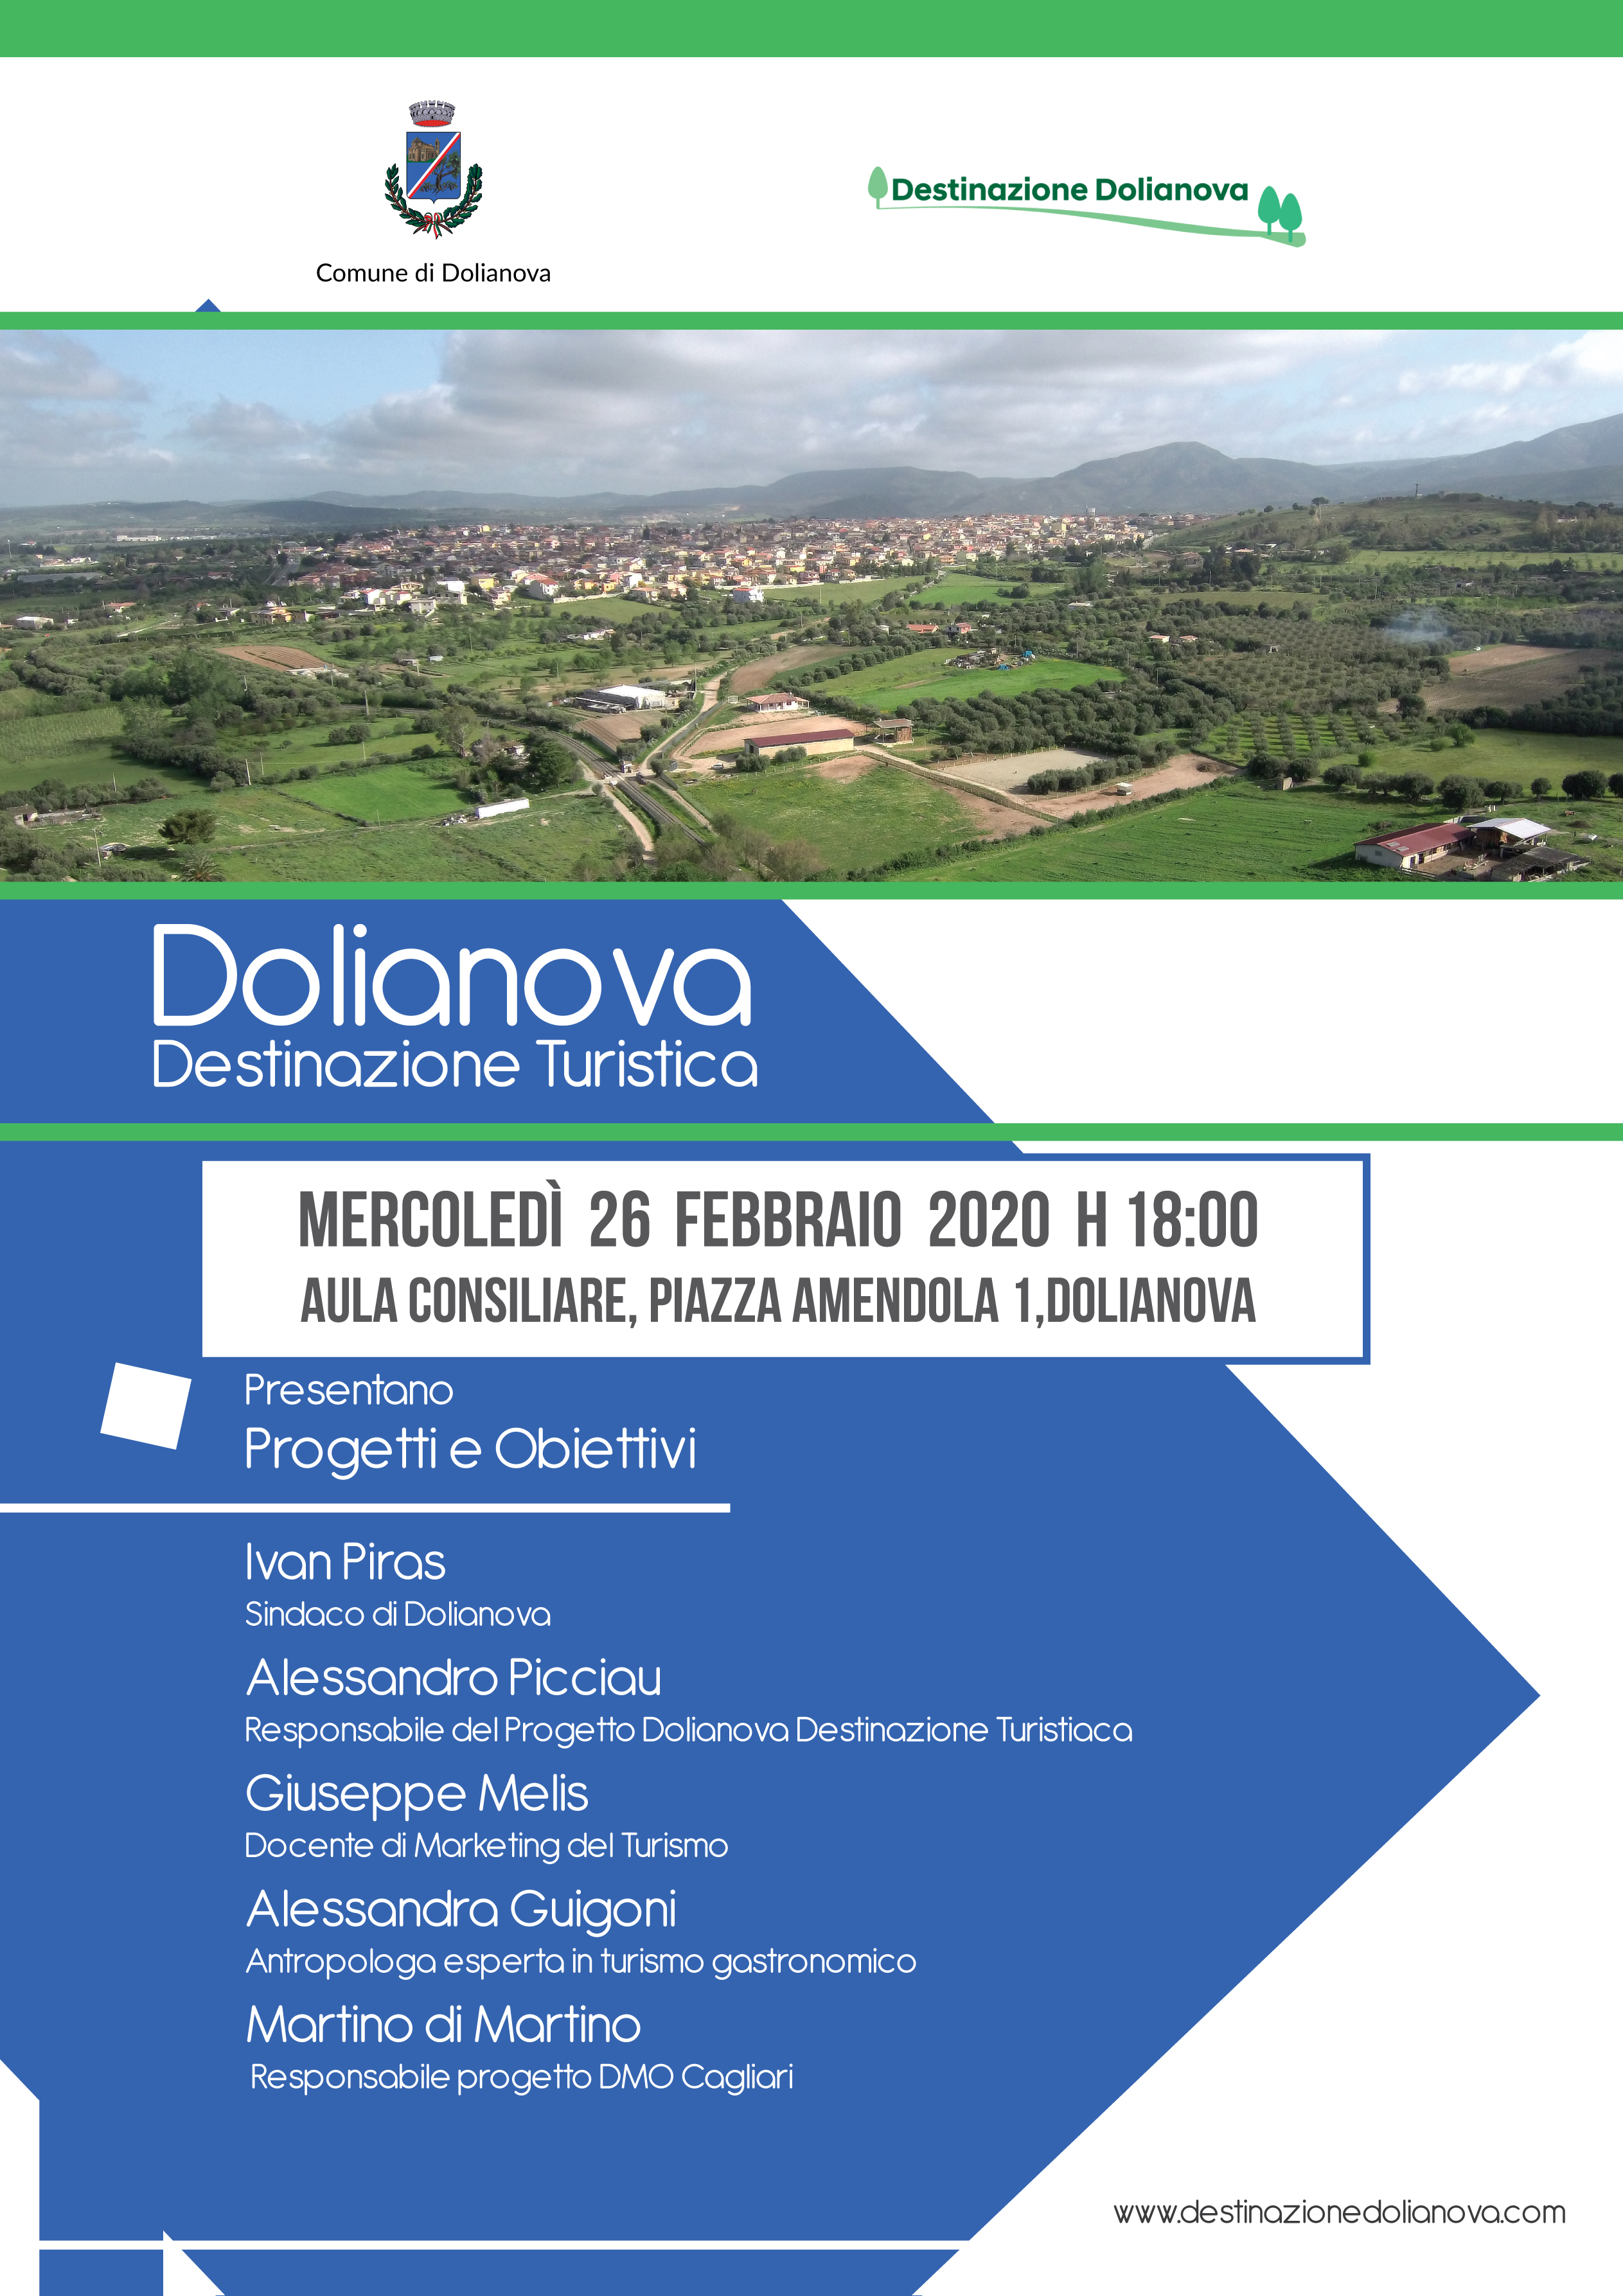 Progetto "Dolianova Destinazione Turistica": Annullamento incontro previsto per oggi 26 febbraio 2020